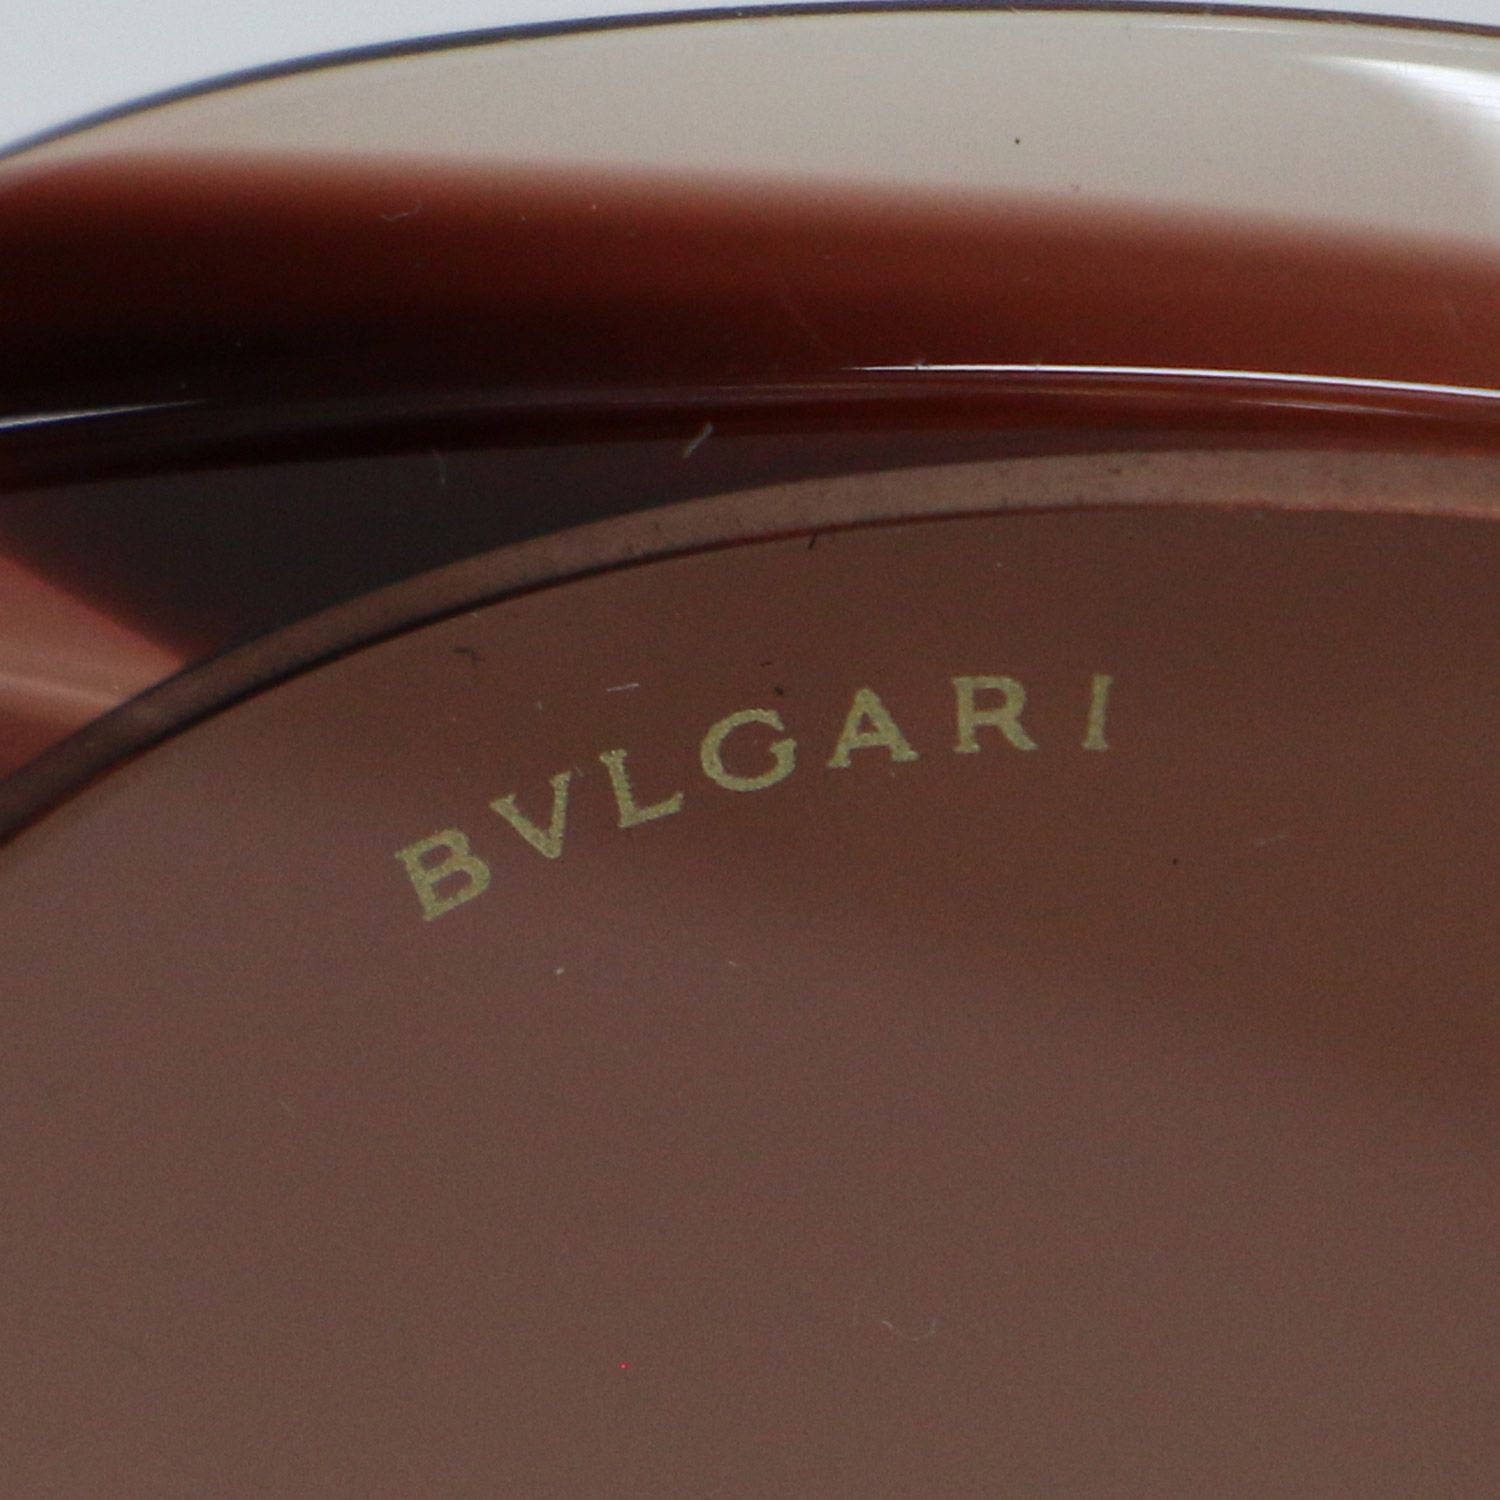 BVLGARI ブルガリ サングラス ブラウン アイウェア 眼鏡 ラウンド